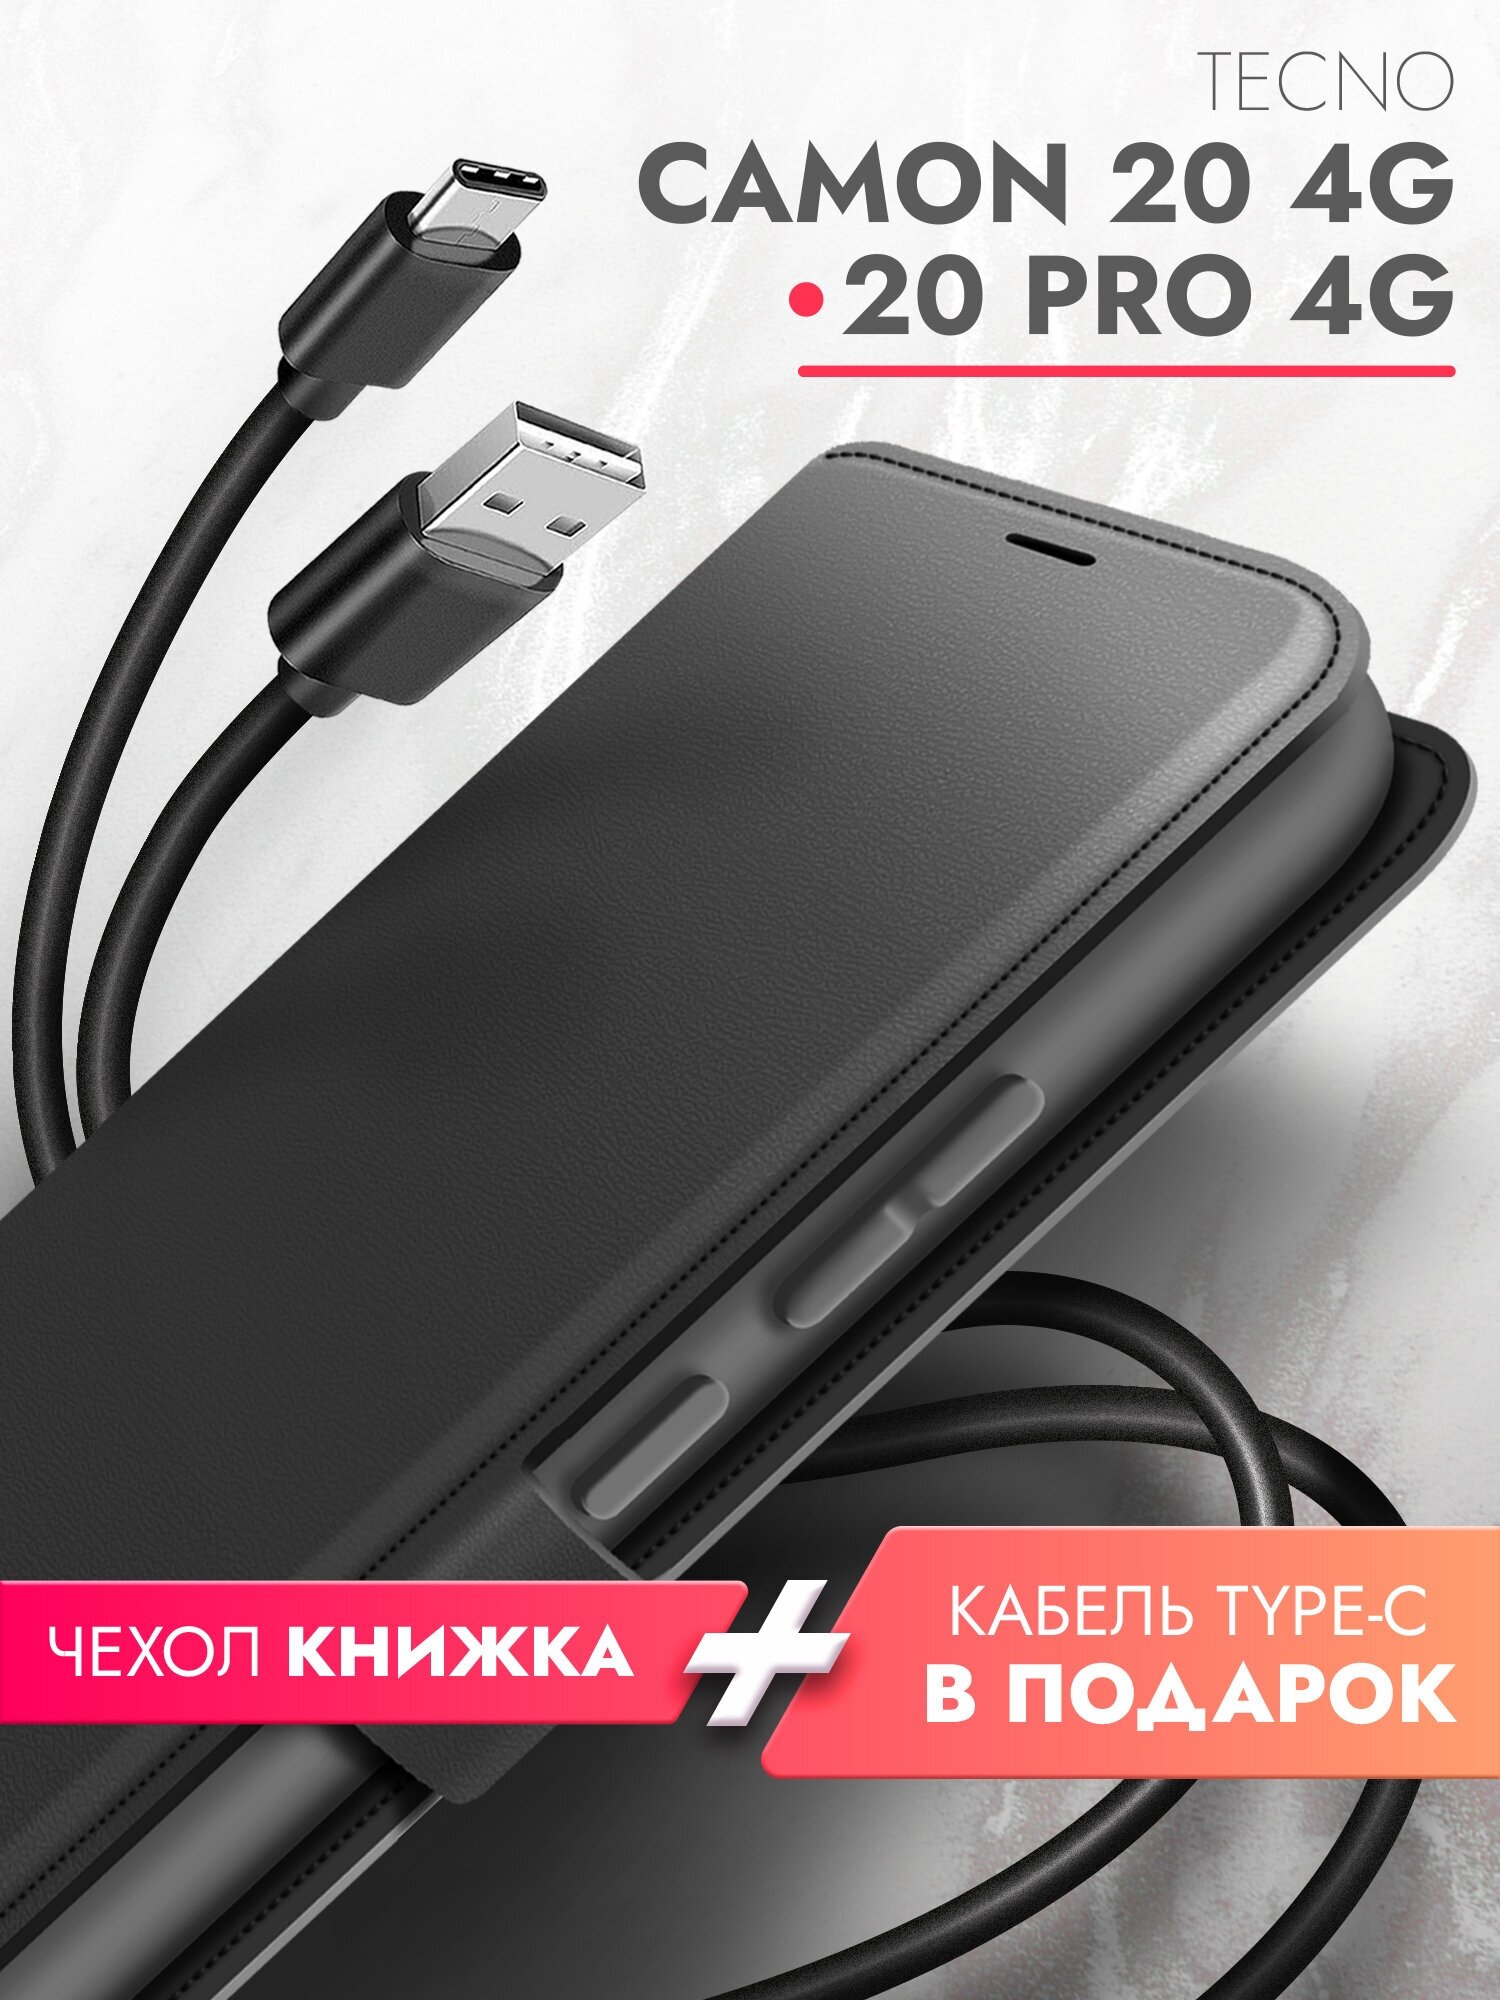 Чехол на Tecno Camon 20/ 20 Pro 4G (Техно Камон 20/20 Про 4г)+кабель Type-C, черный книжка эко-кожа с отделением для карт и магнитами Book case, Brozo